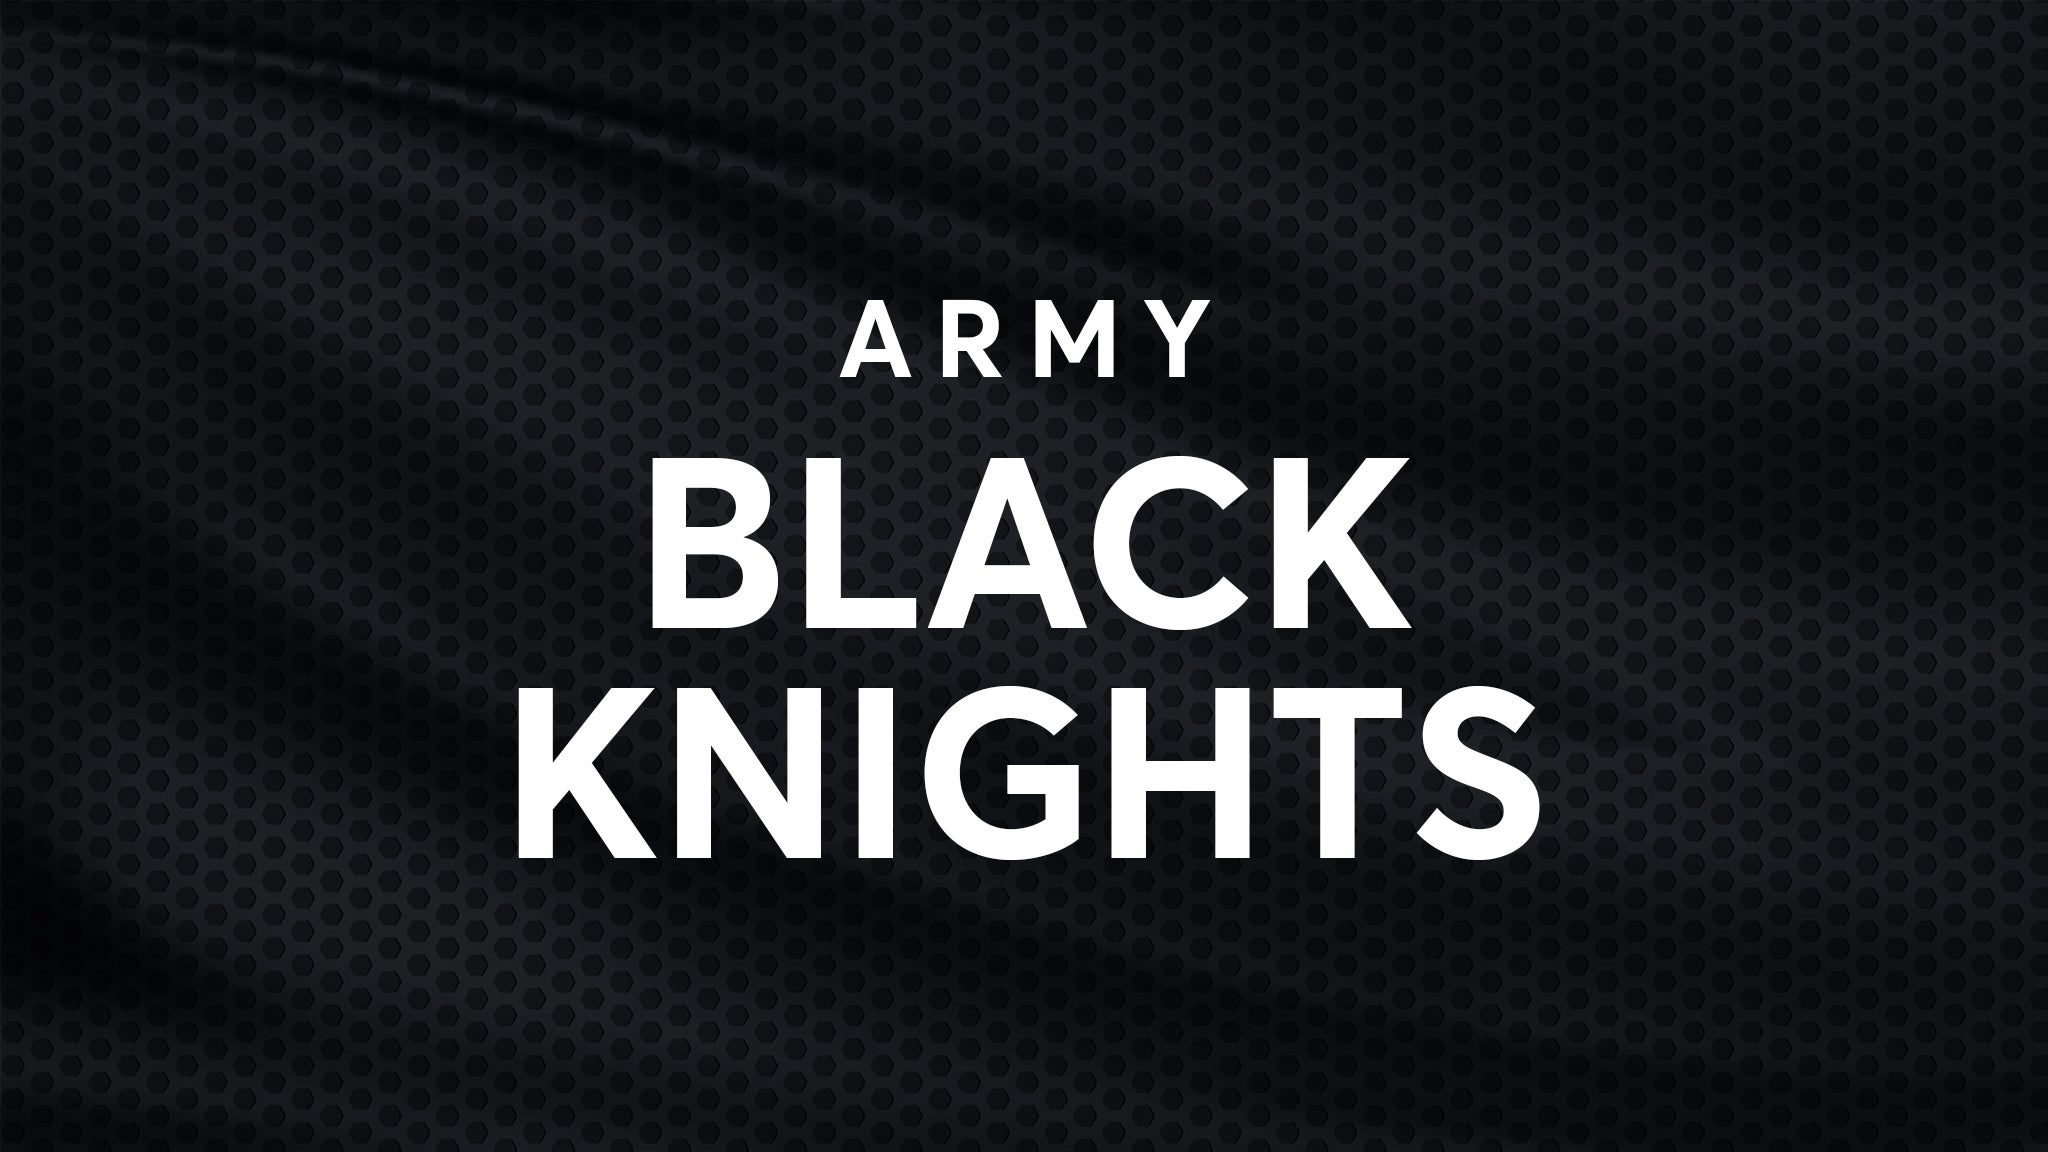 Army Black Knights Football vs. Rice Owls Football hero